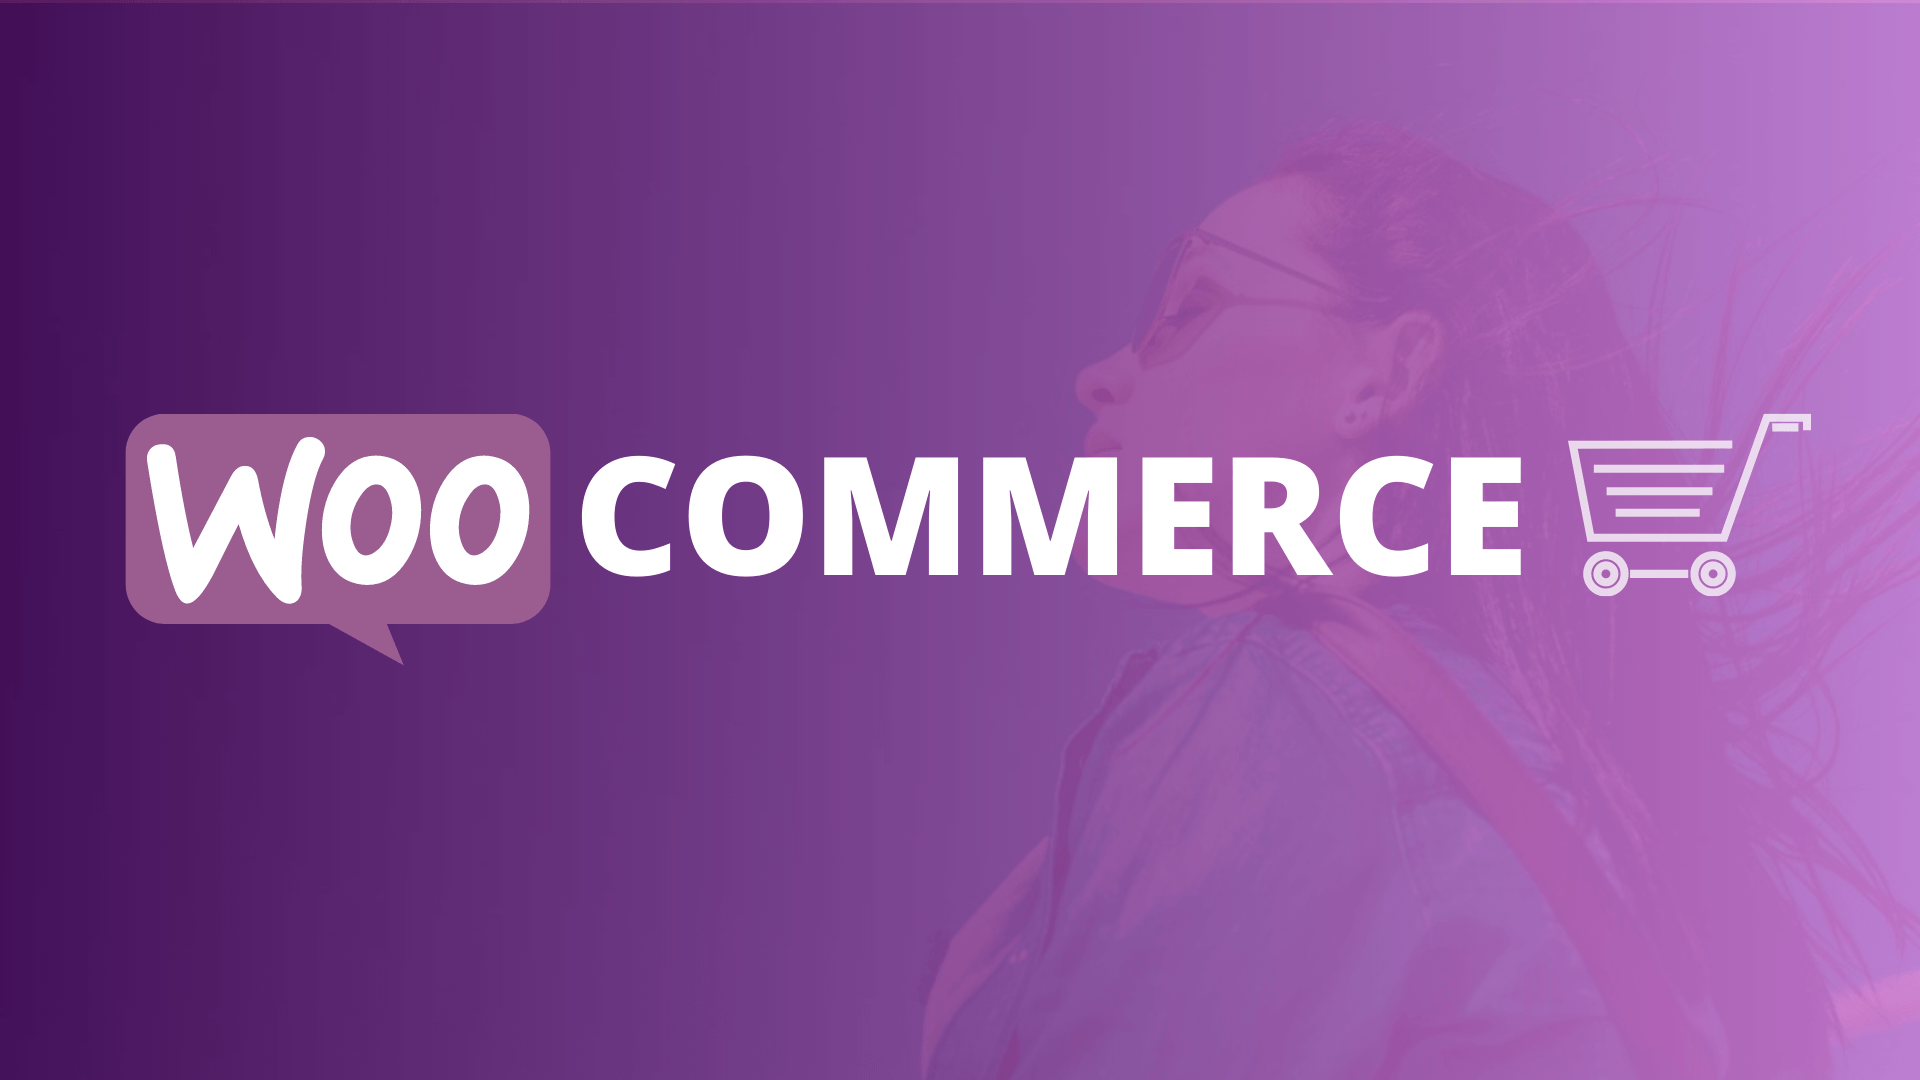 חנות אינטרנטית למתחילים (Woocommerce)